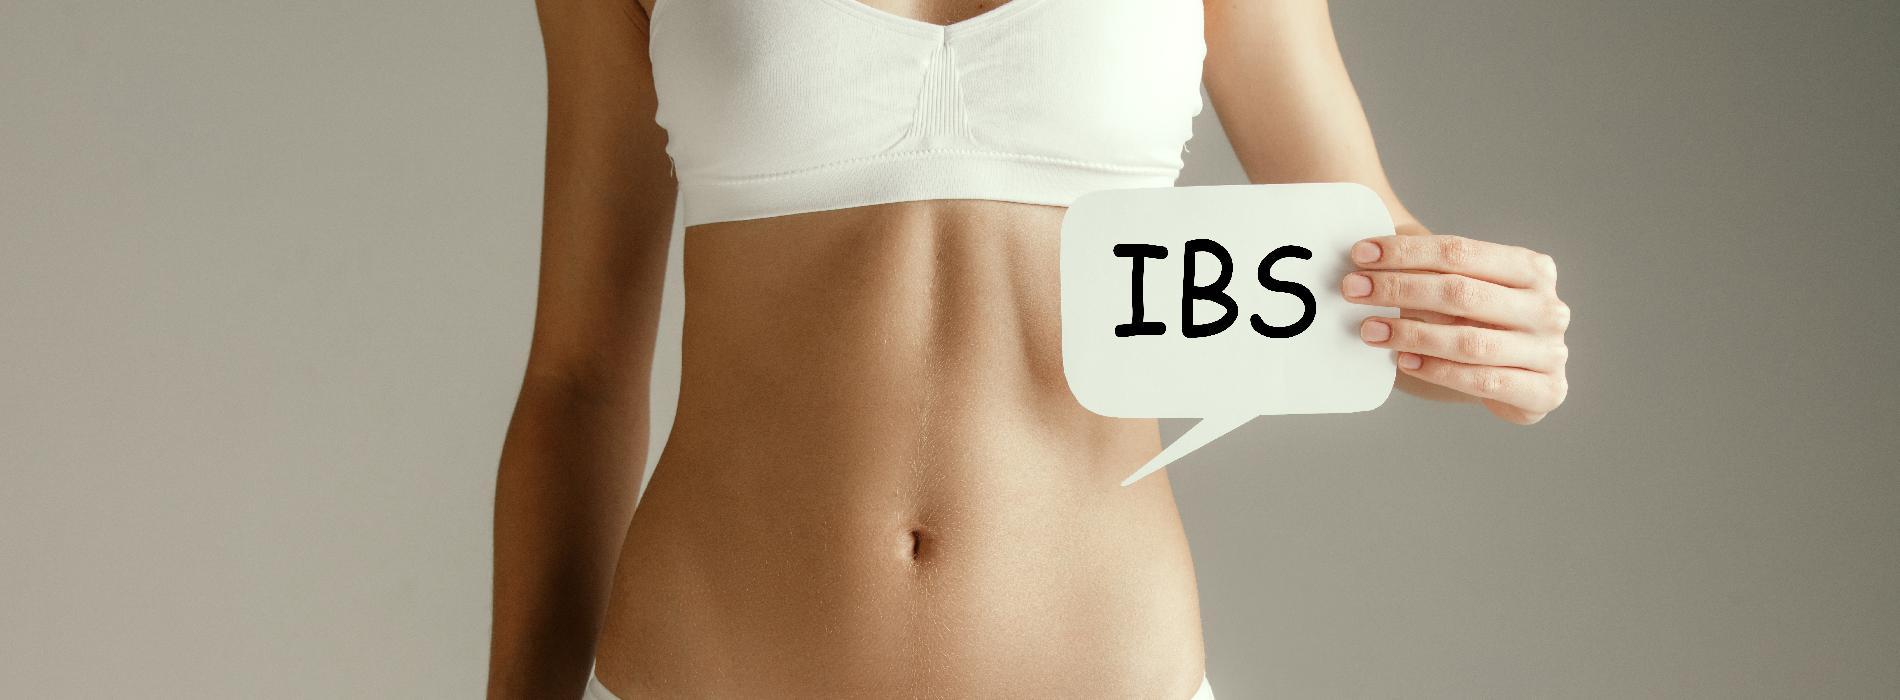 IBS - co to za choroba?